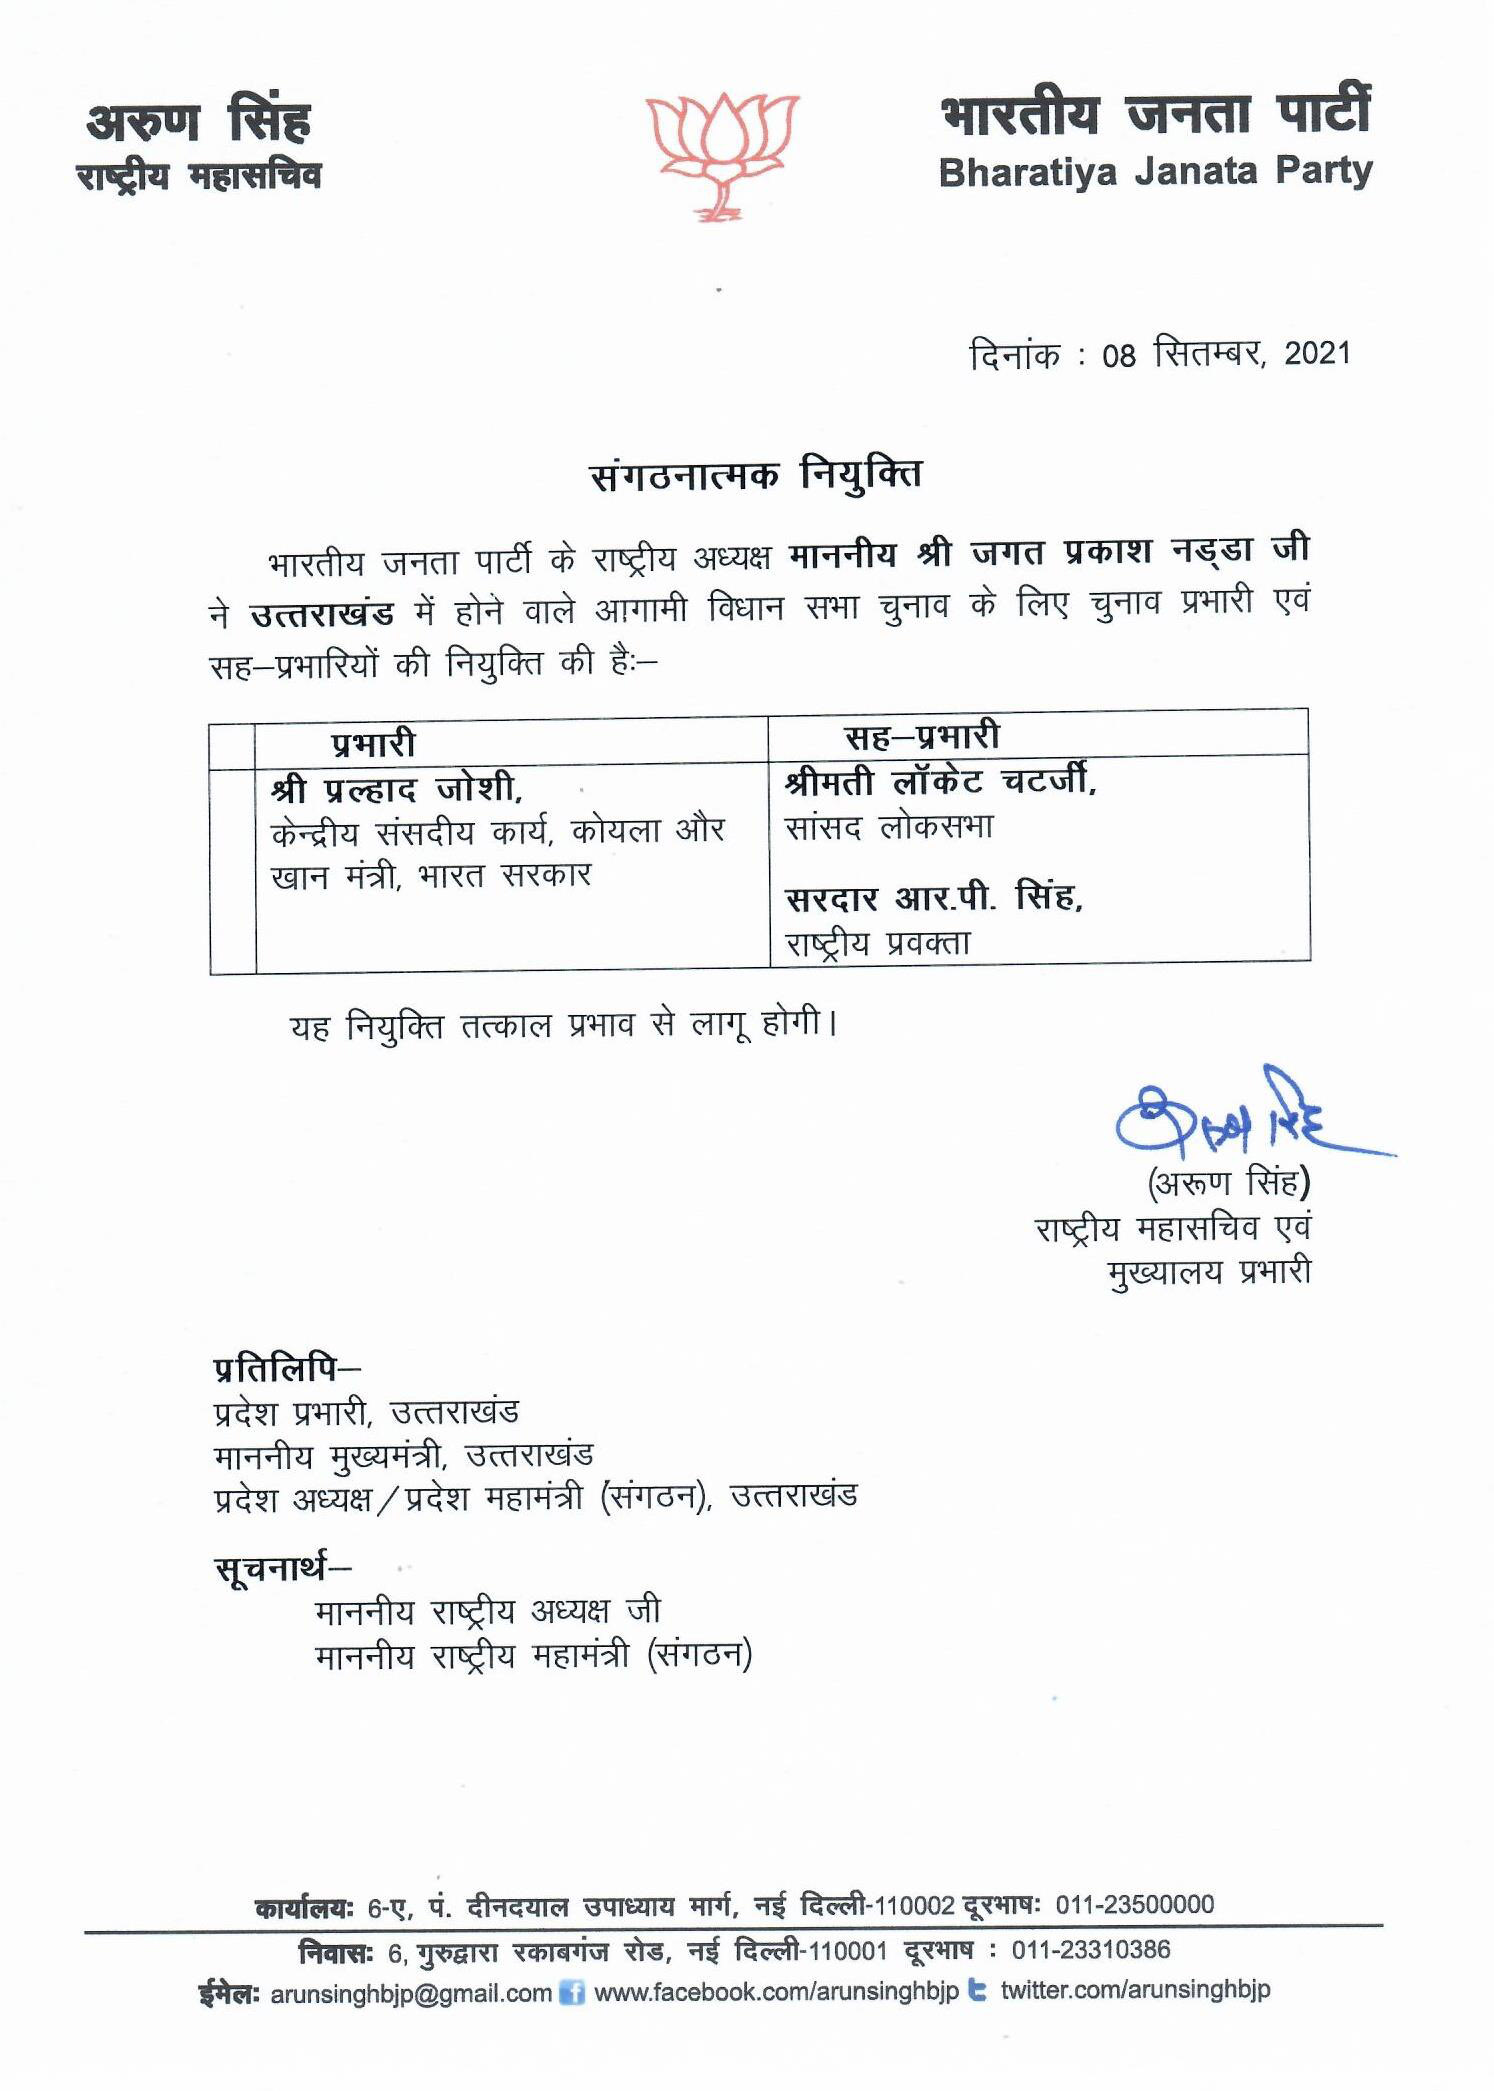 भाजपा ने चुनाव प्रभारियों की नियुक्ति की